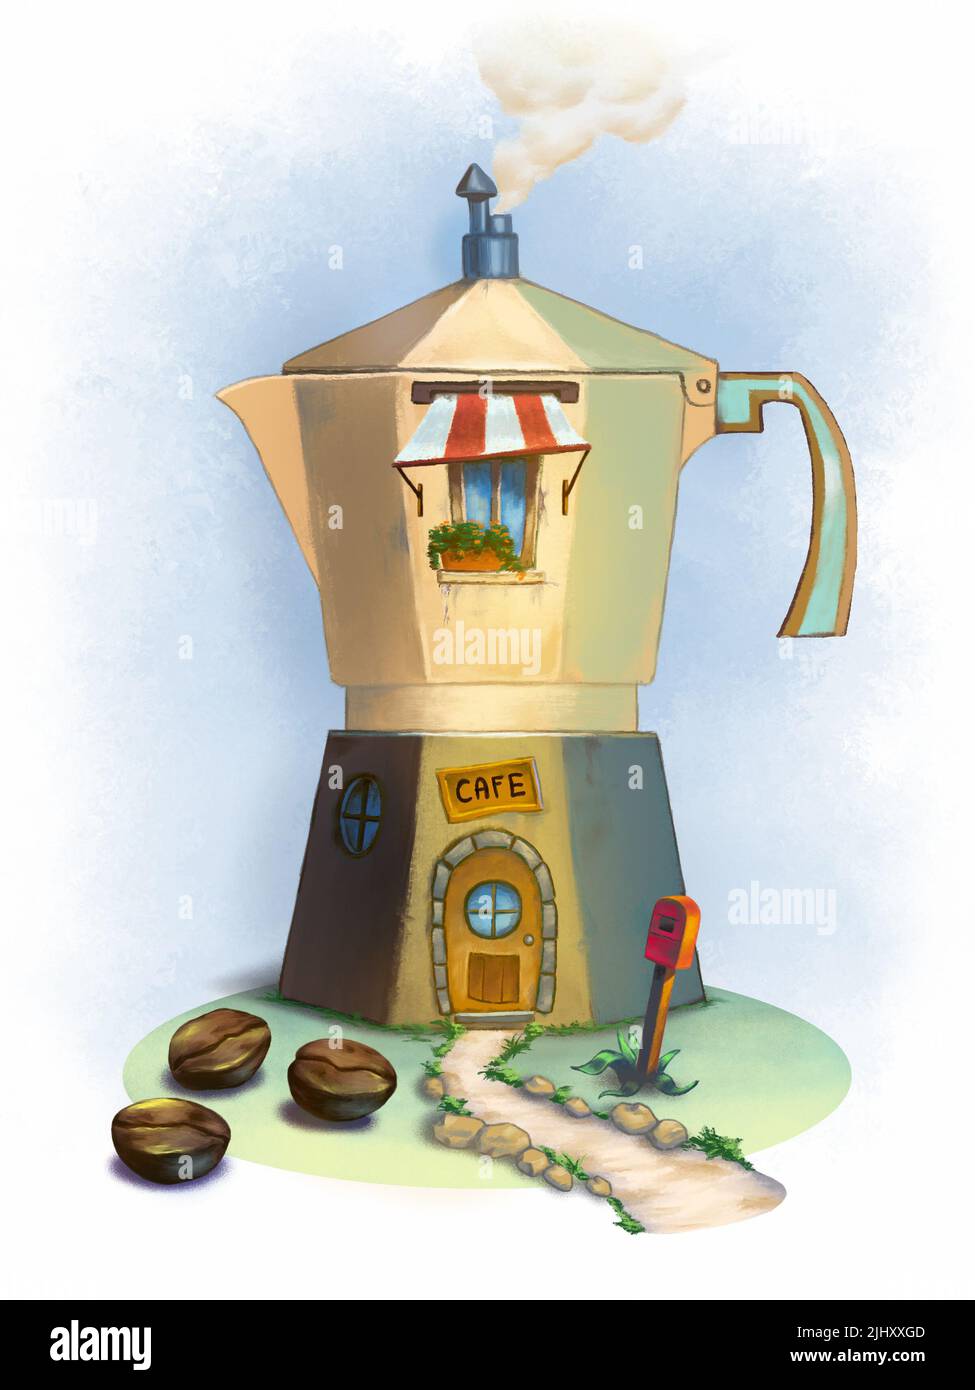 Wohngebäude in Form einer Moka-Kaffeemaschine. Digitale Illustration. Stockfoto